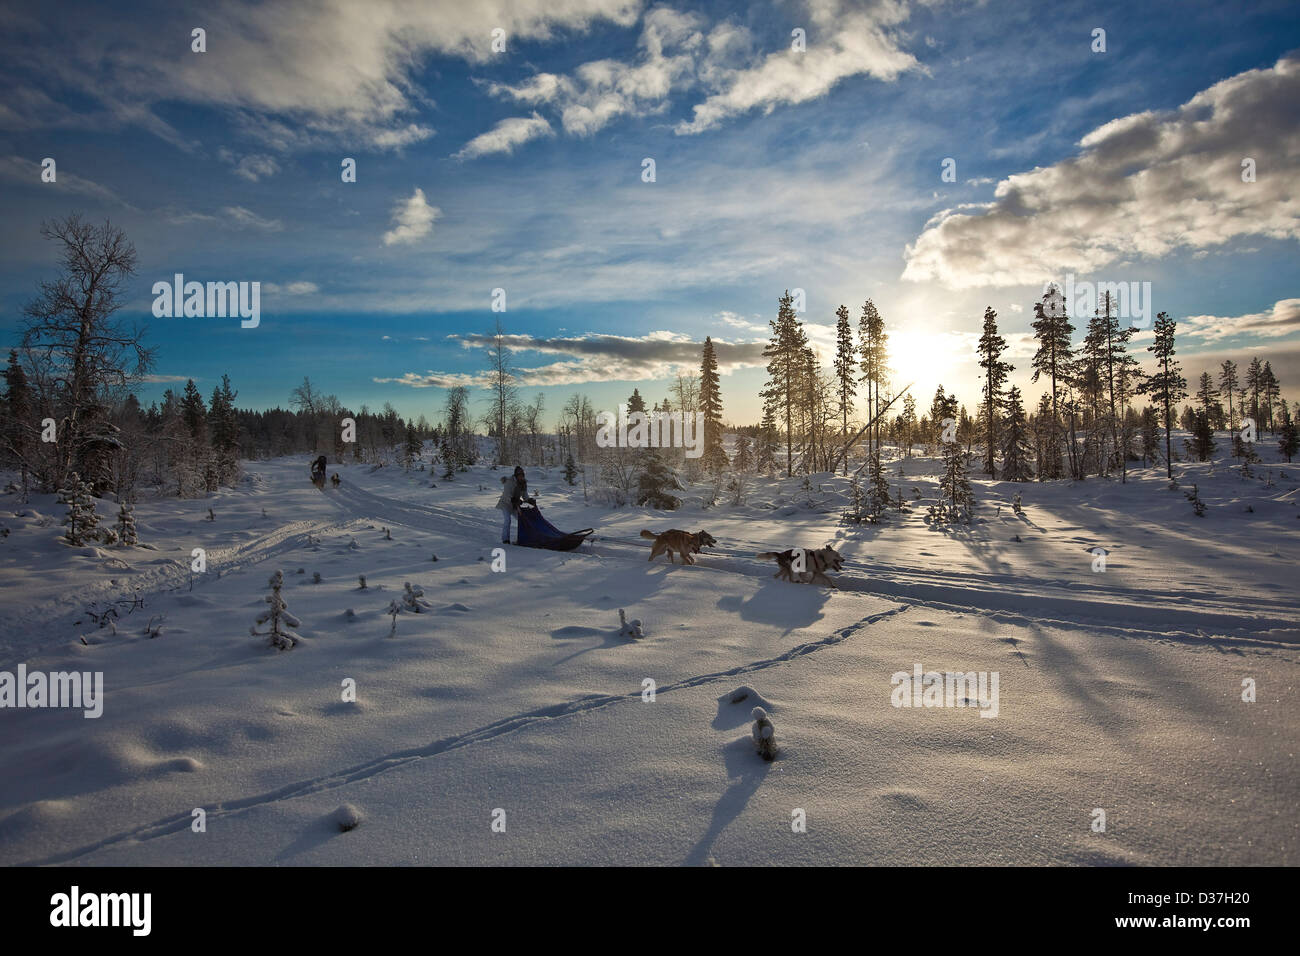 Huskies tirando de trineos a lo largo de la nieve, Laponia Foto de stock